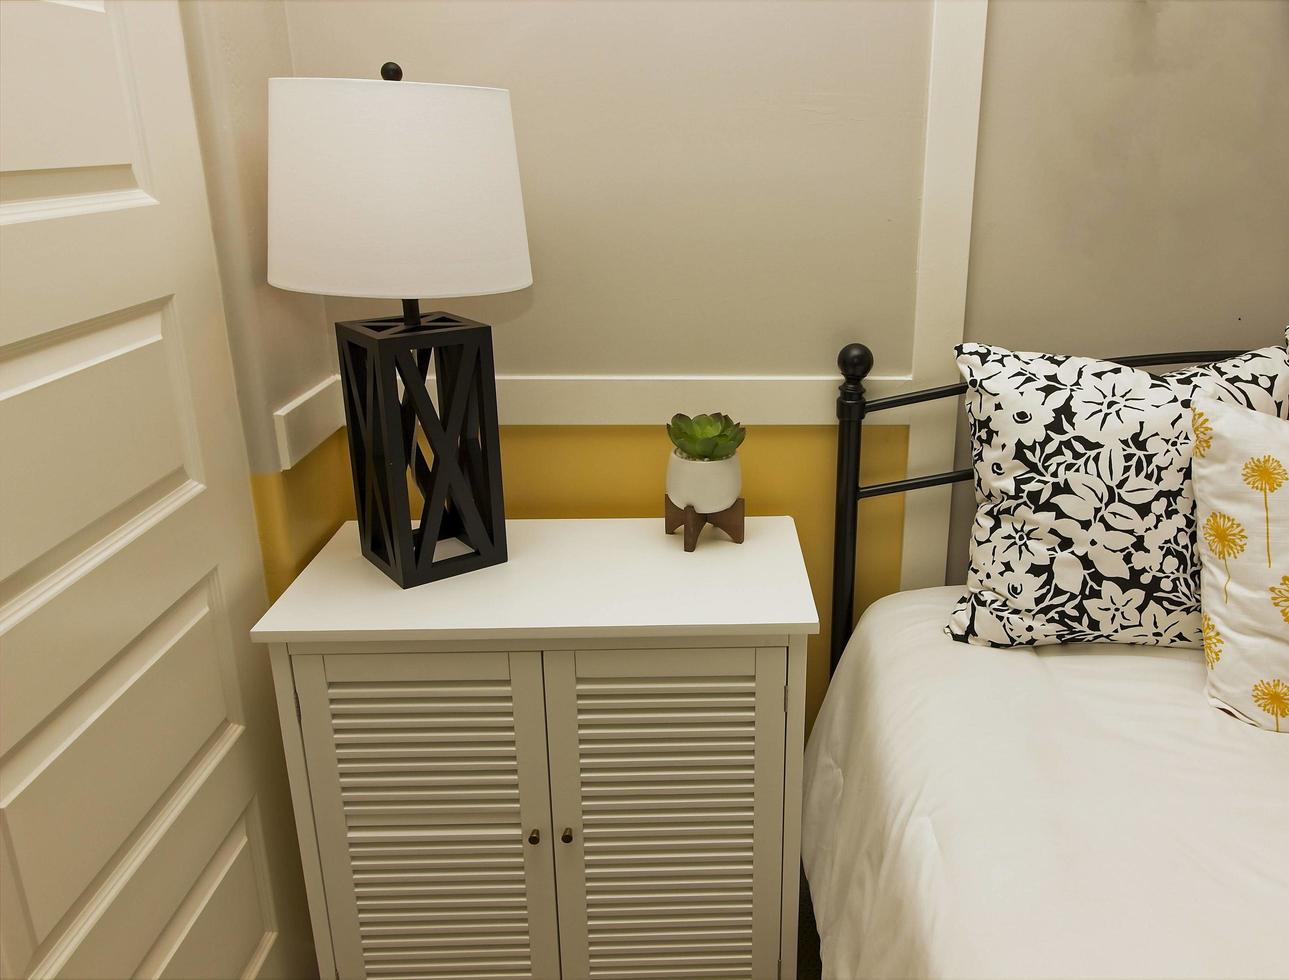 sovrum nattduksbord med modern lampa foto